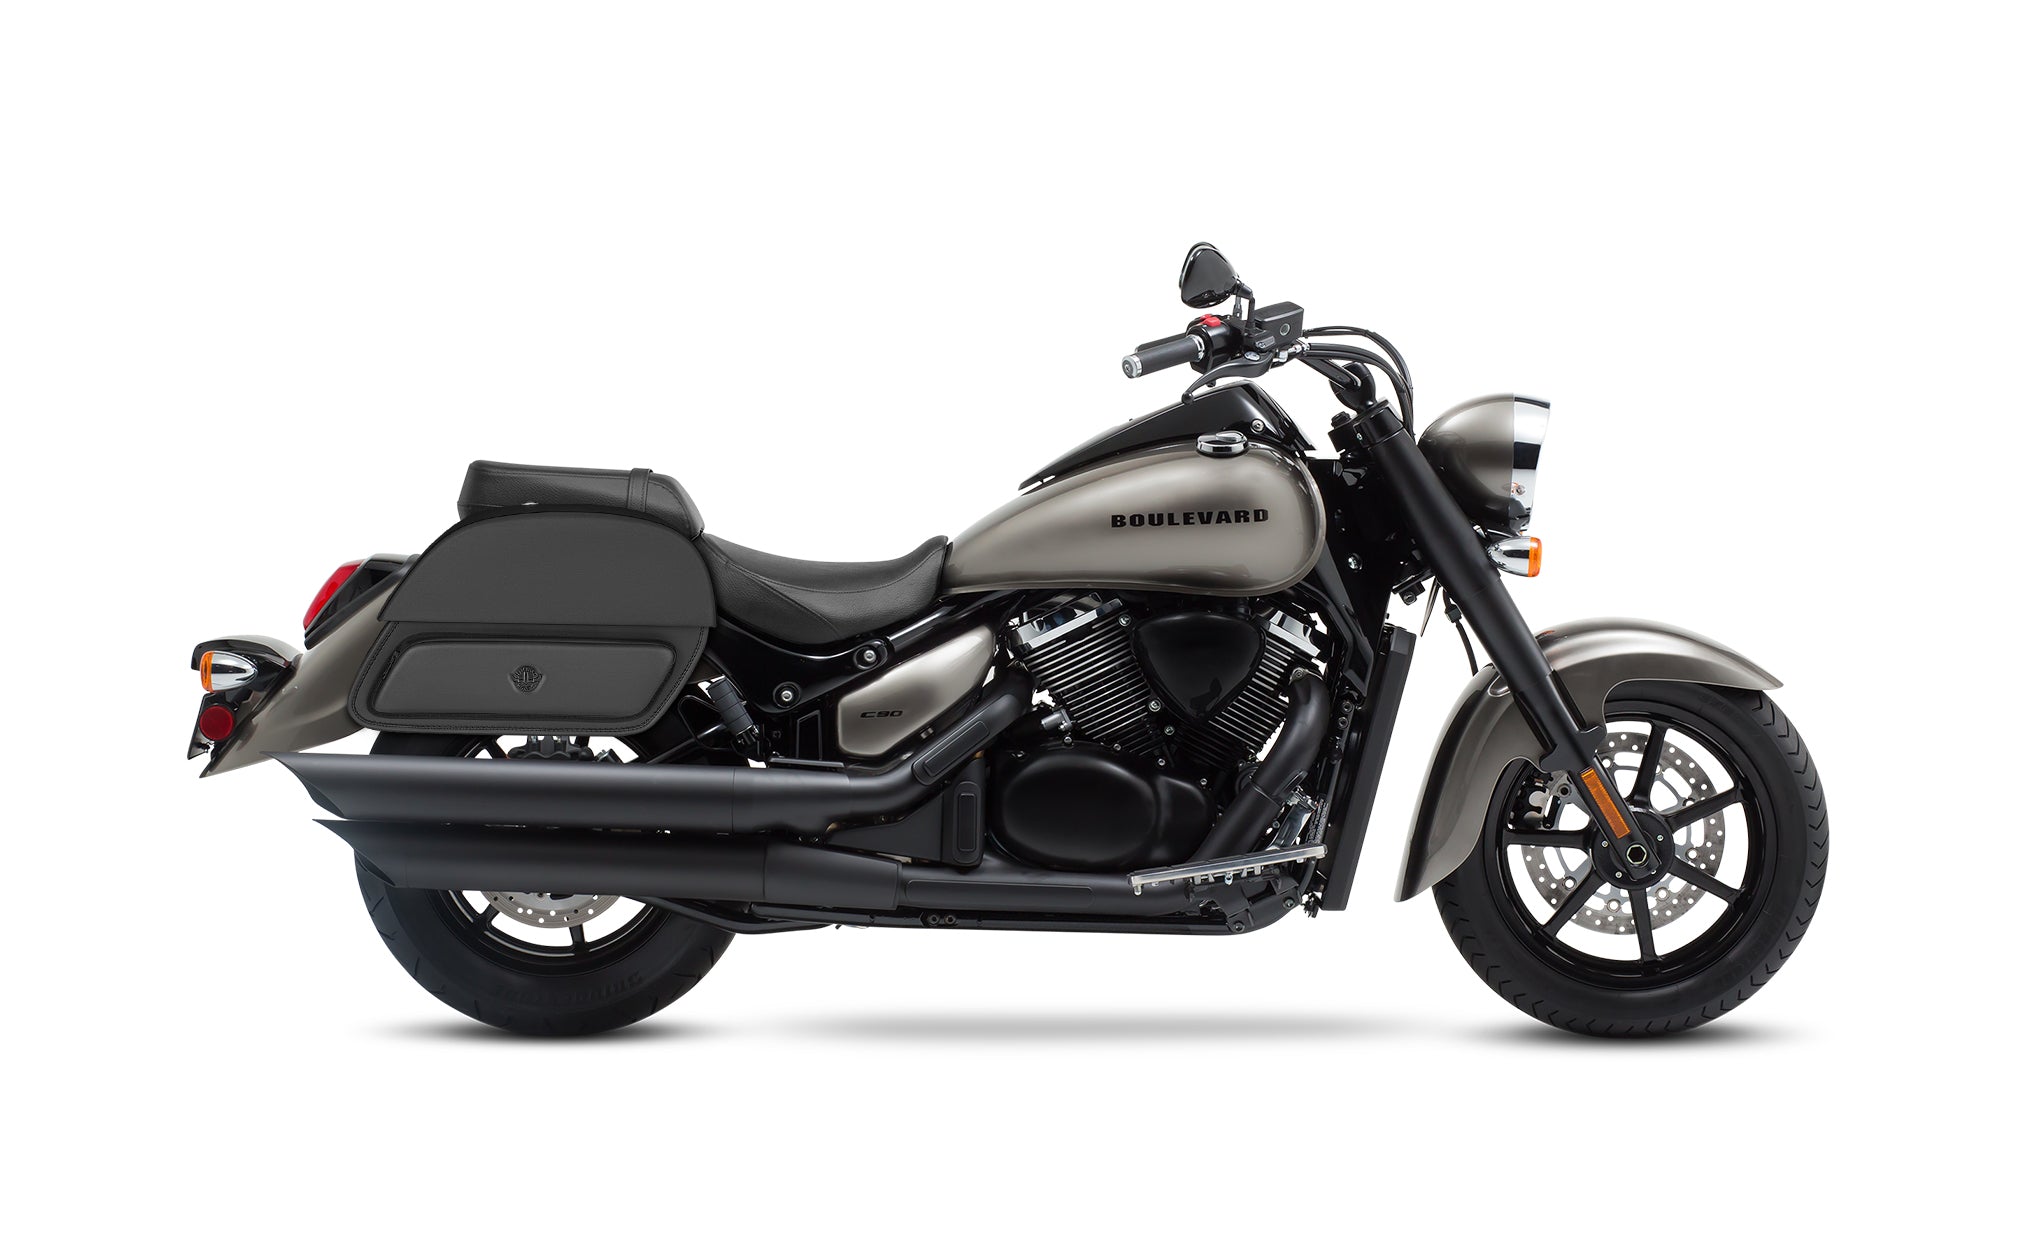 viking-28-liters-pantheon-medium-suzuki-boulevard-c90-leather-motorcycle-saddlebags @expand